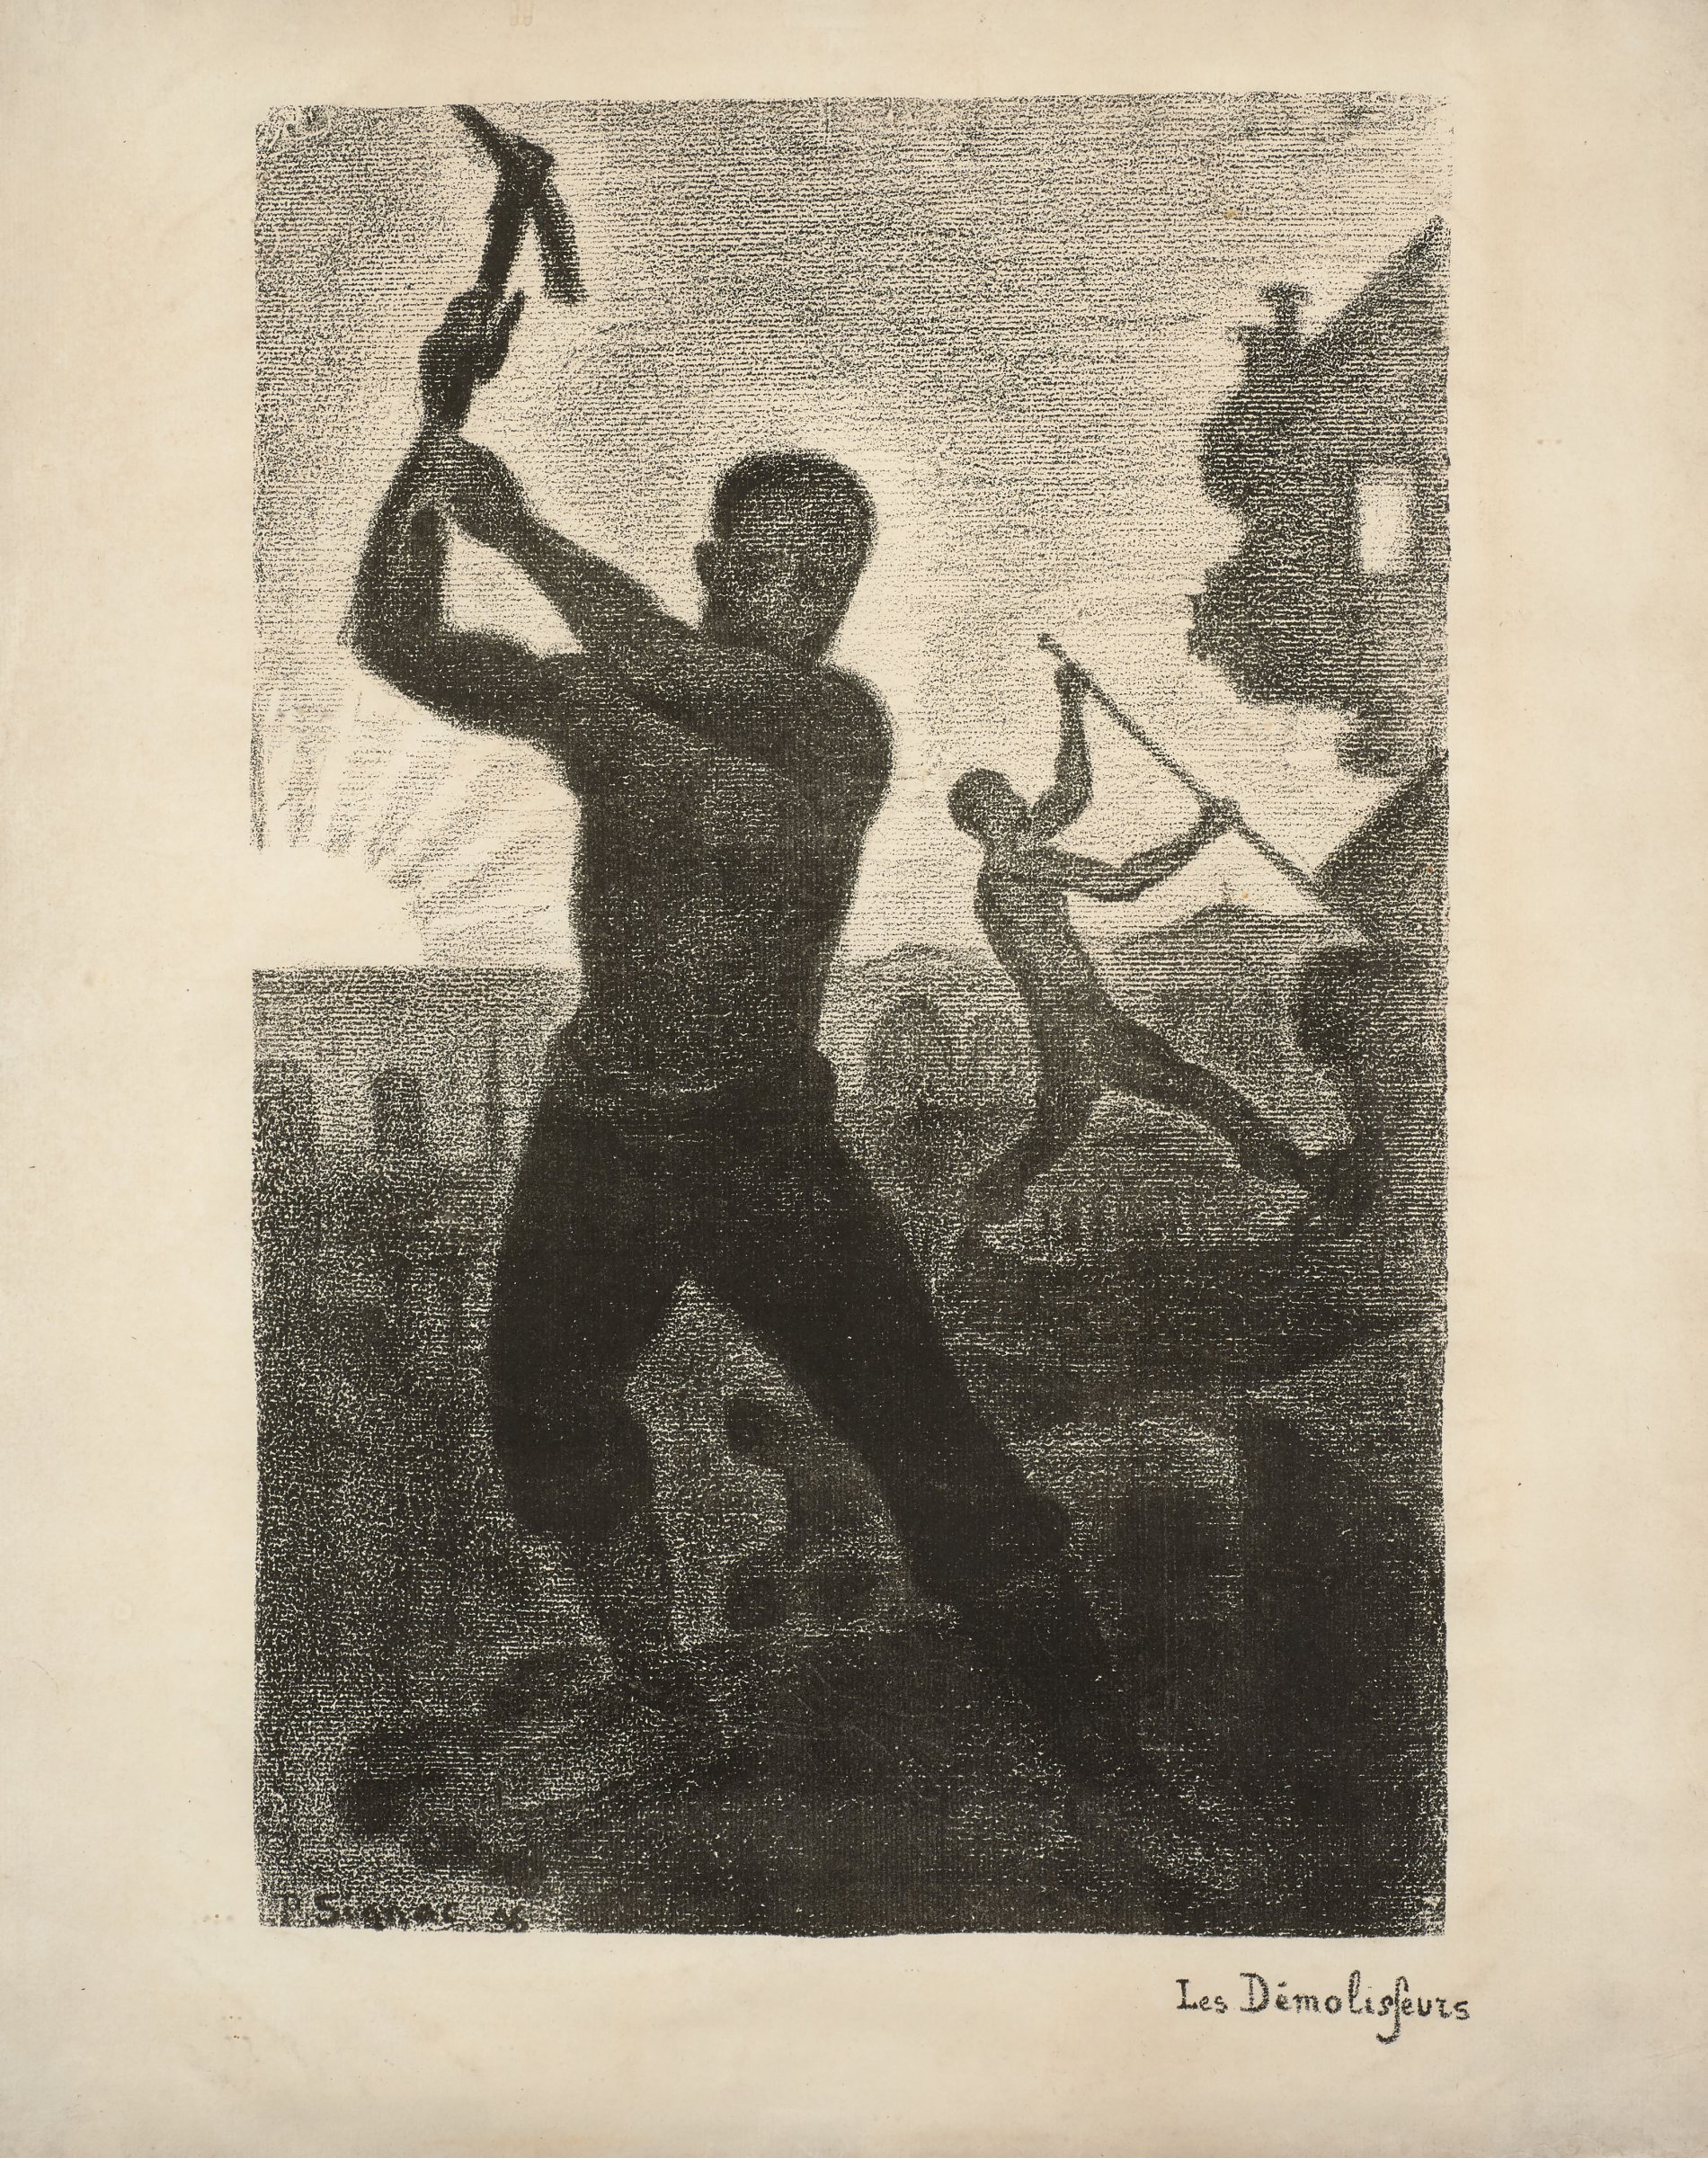 Paul Signac, Les Dmolisseurs, lithograph, 1896